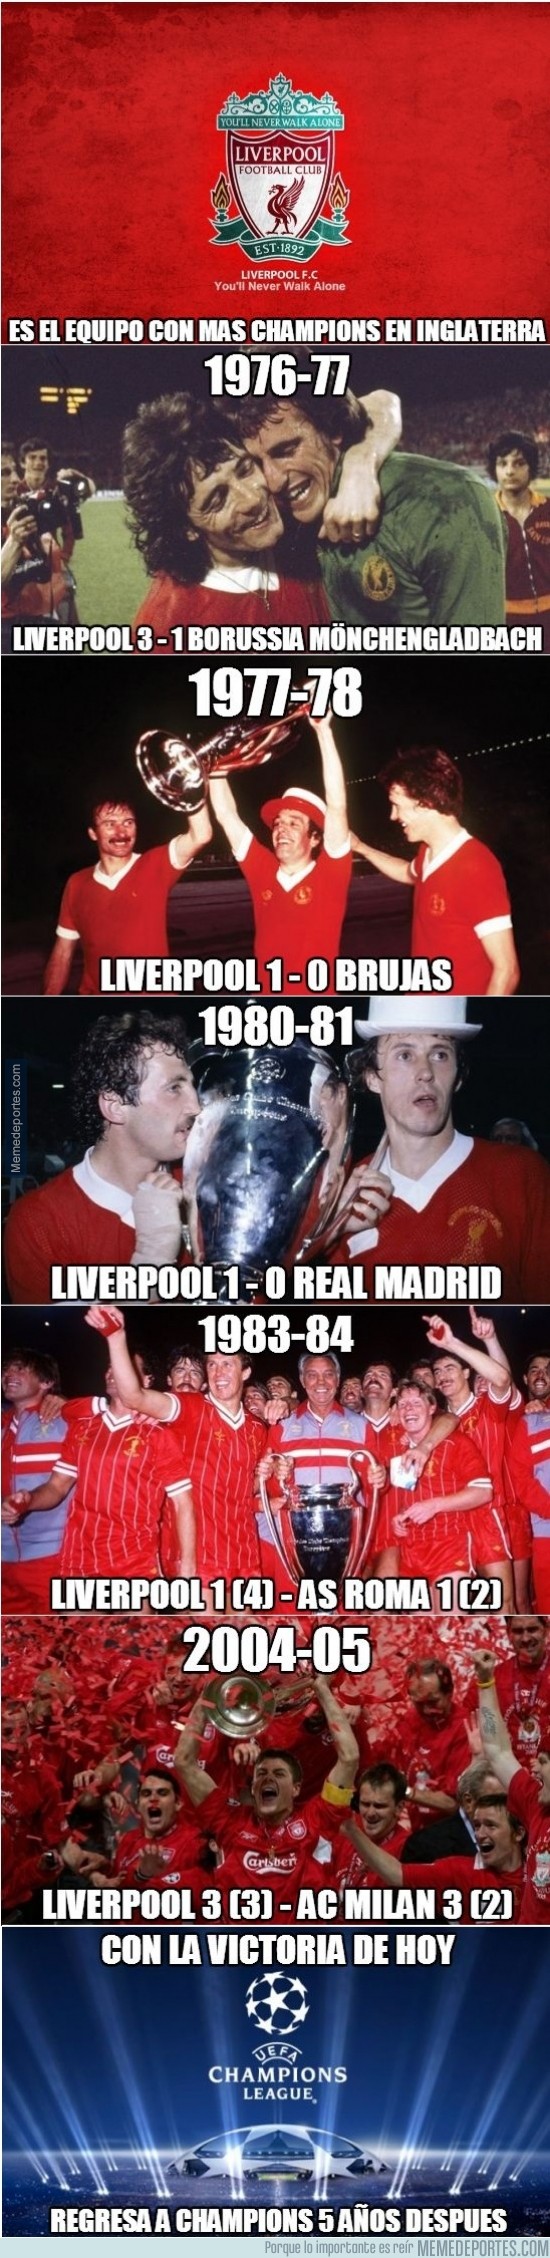 302593 - Hoy el Liverpool aseguró matemáticamente su puesto en Champions